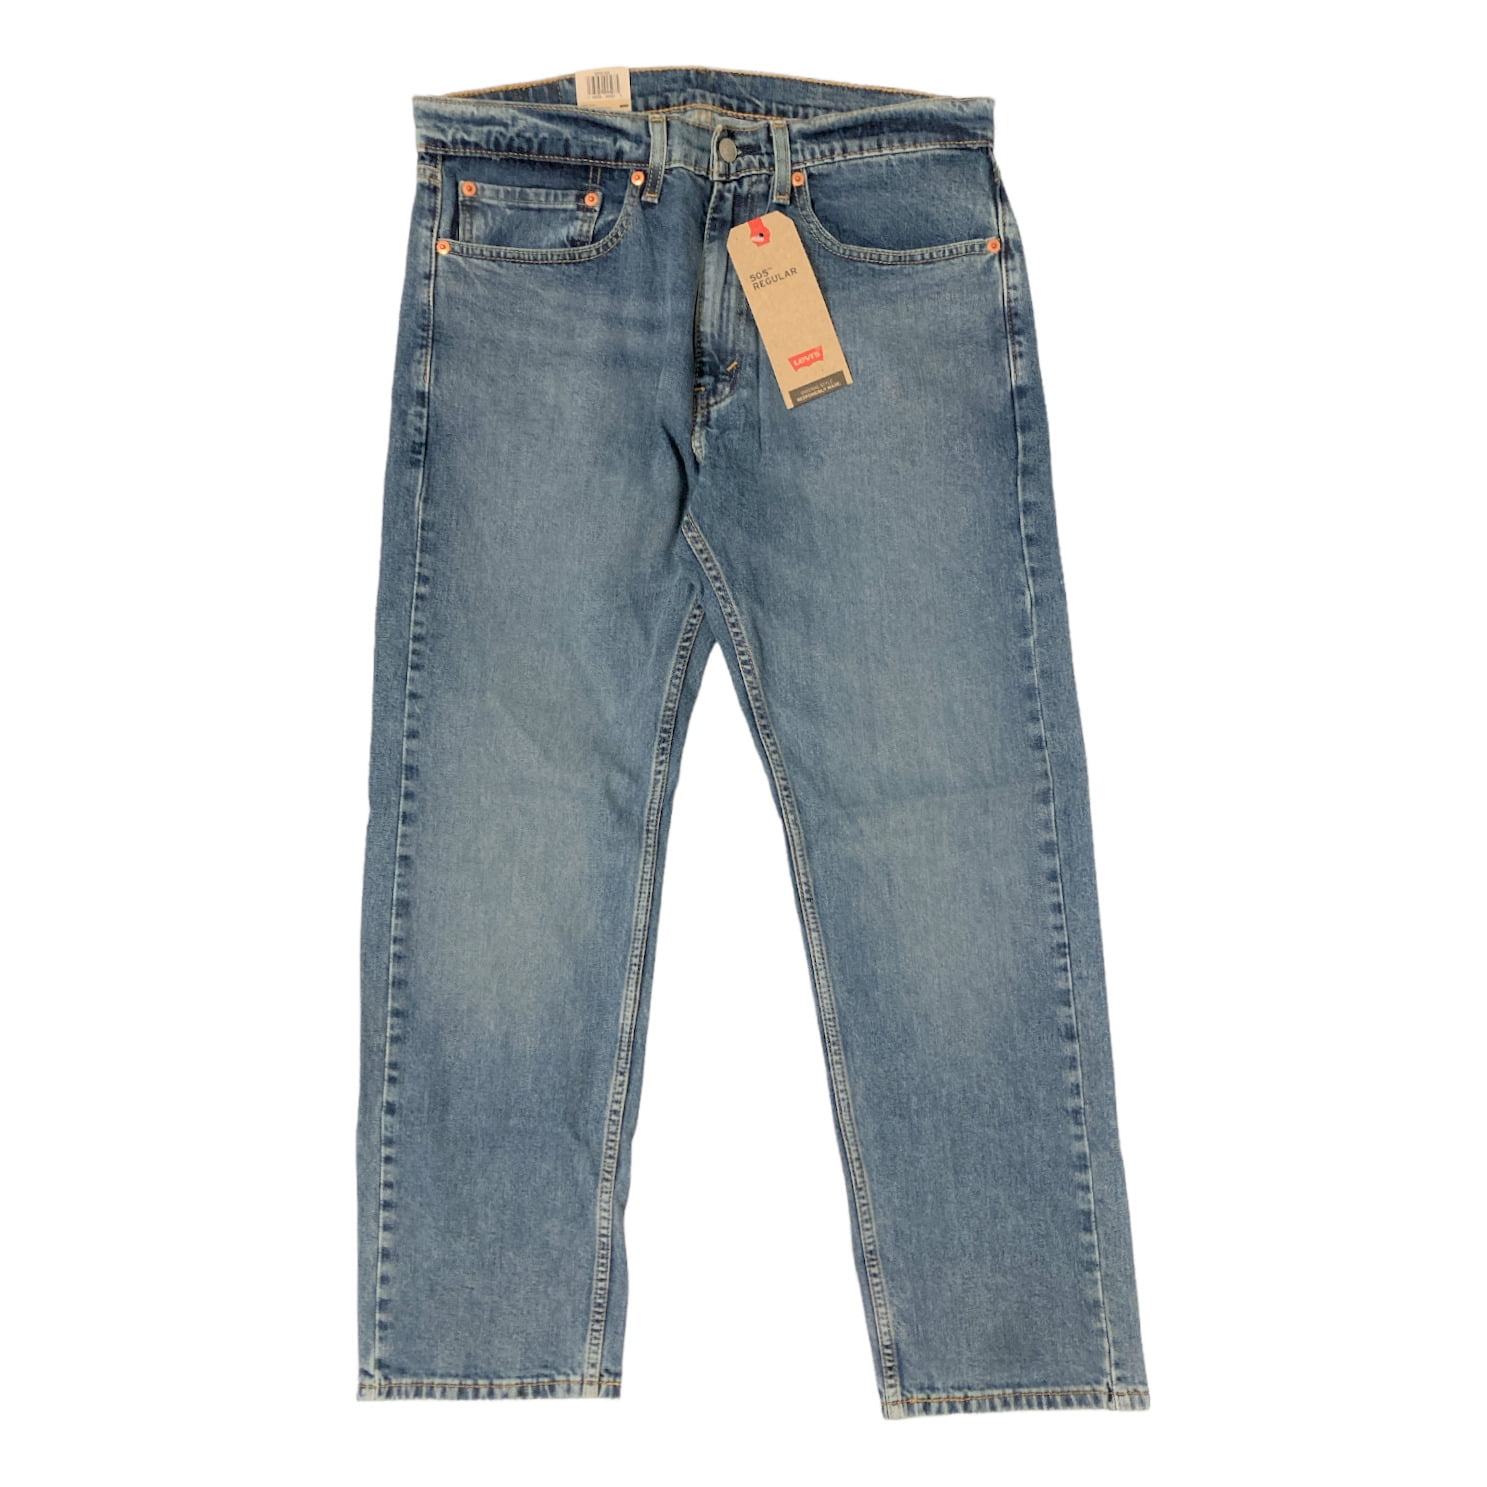 Levi's Men's 505 Regular Fit Jeans in Medium Stonewash, 33 x 30